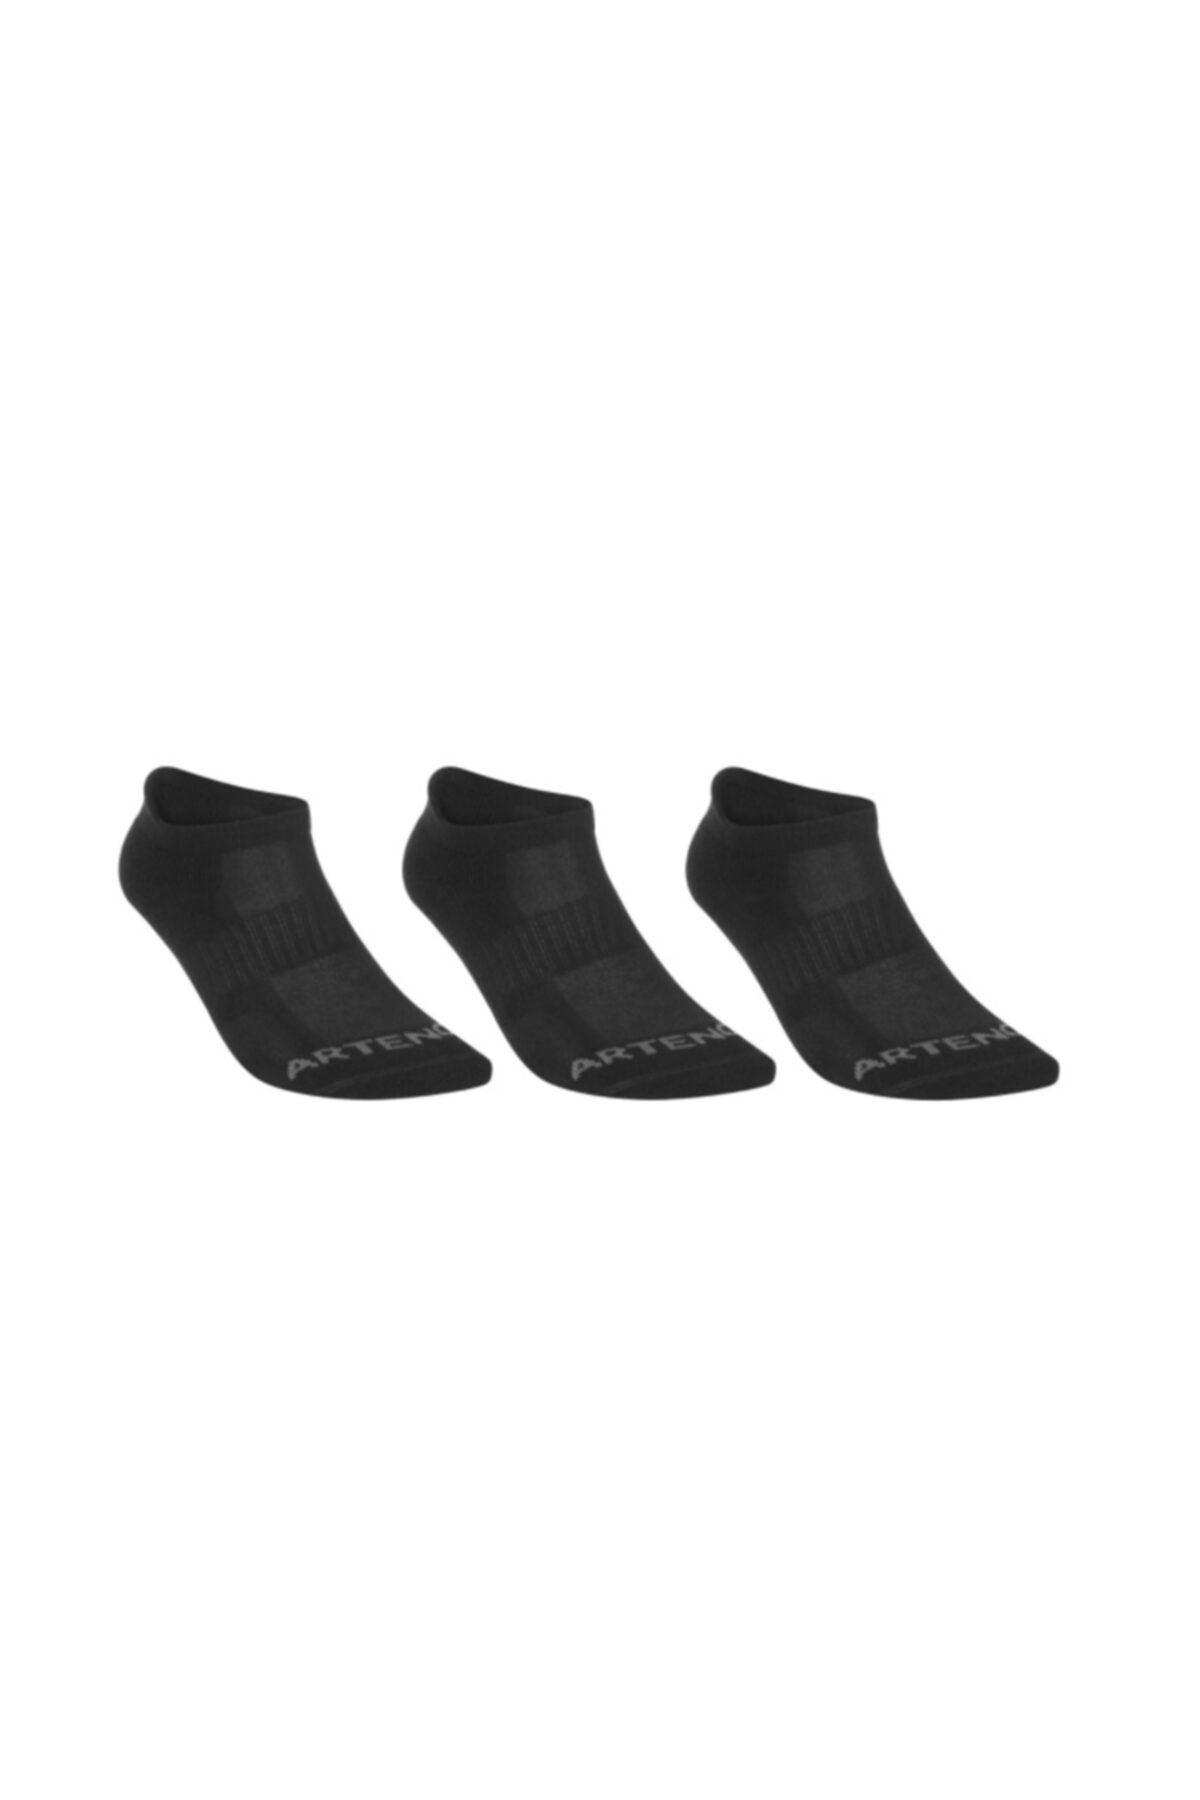 HUHULOGY Spor Çorabı - Kısa Konçlu - 3 Çift - Siyah - Rs500 Artengo